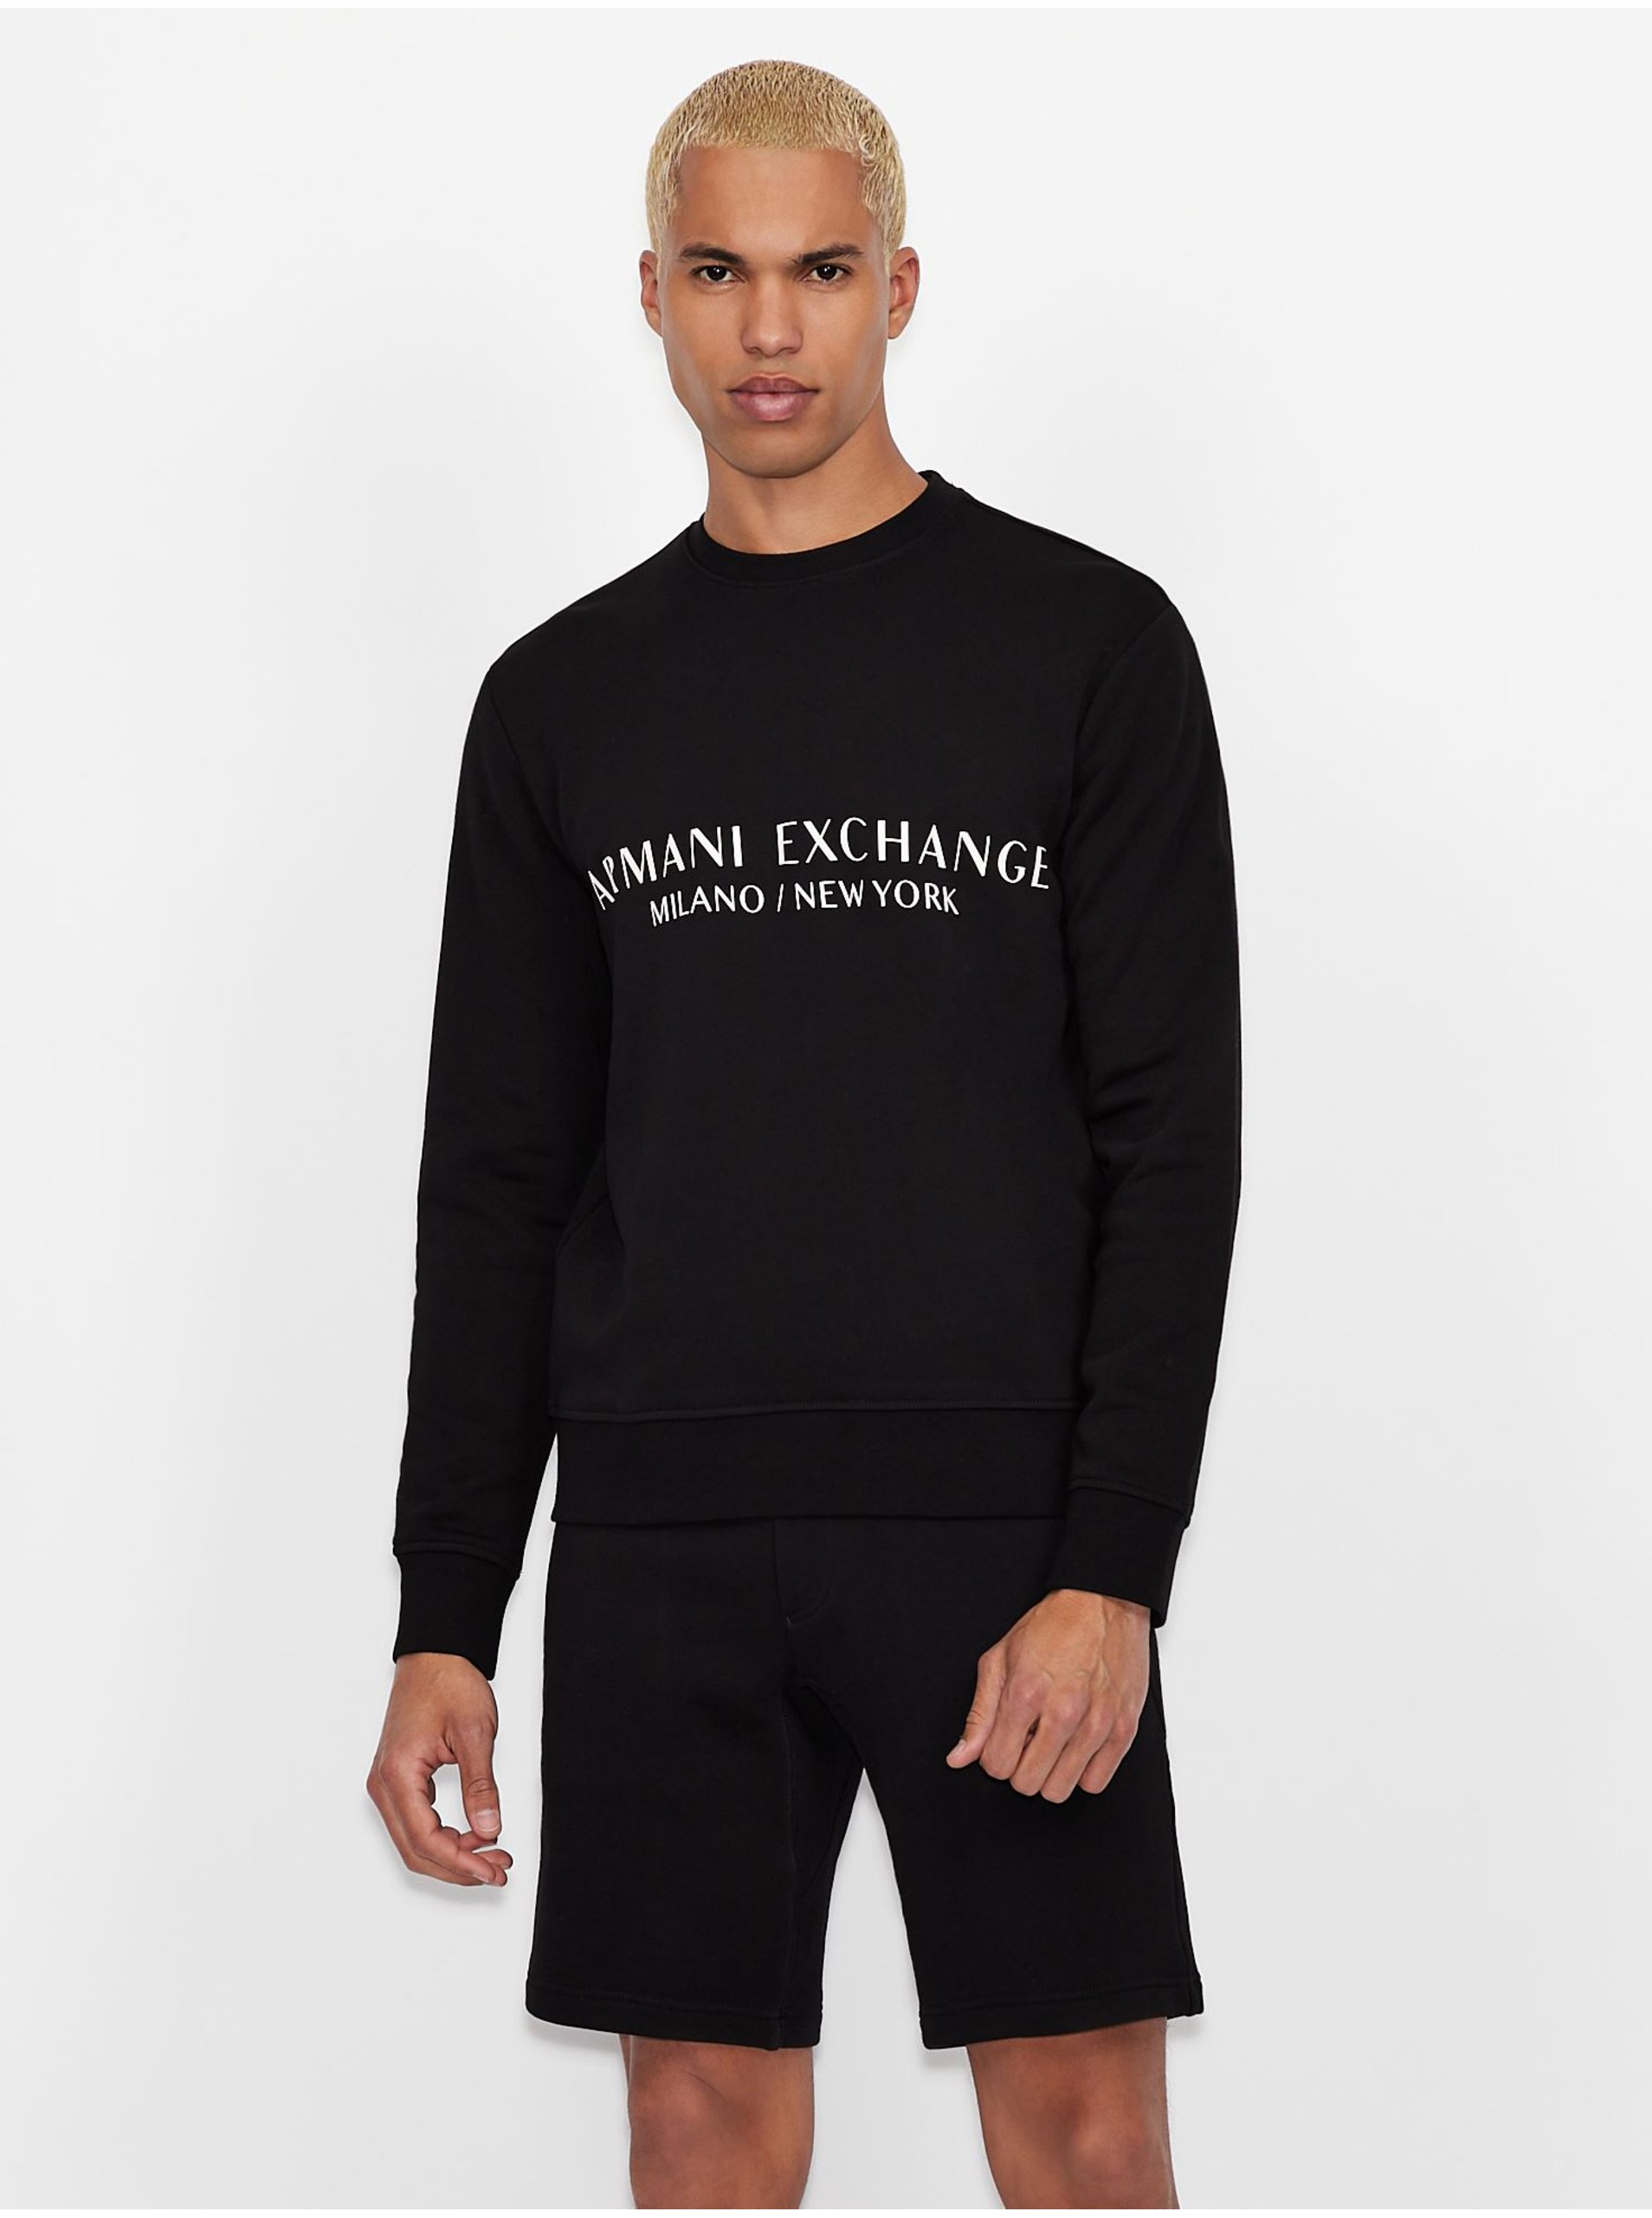 Lacno Čierna pánska mikina s nápisom Armani Exchange